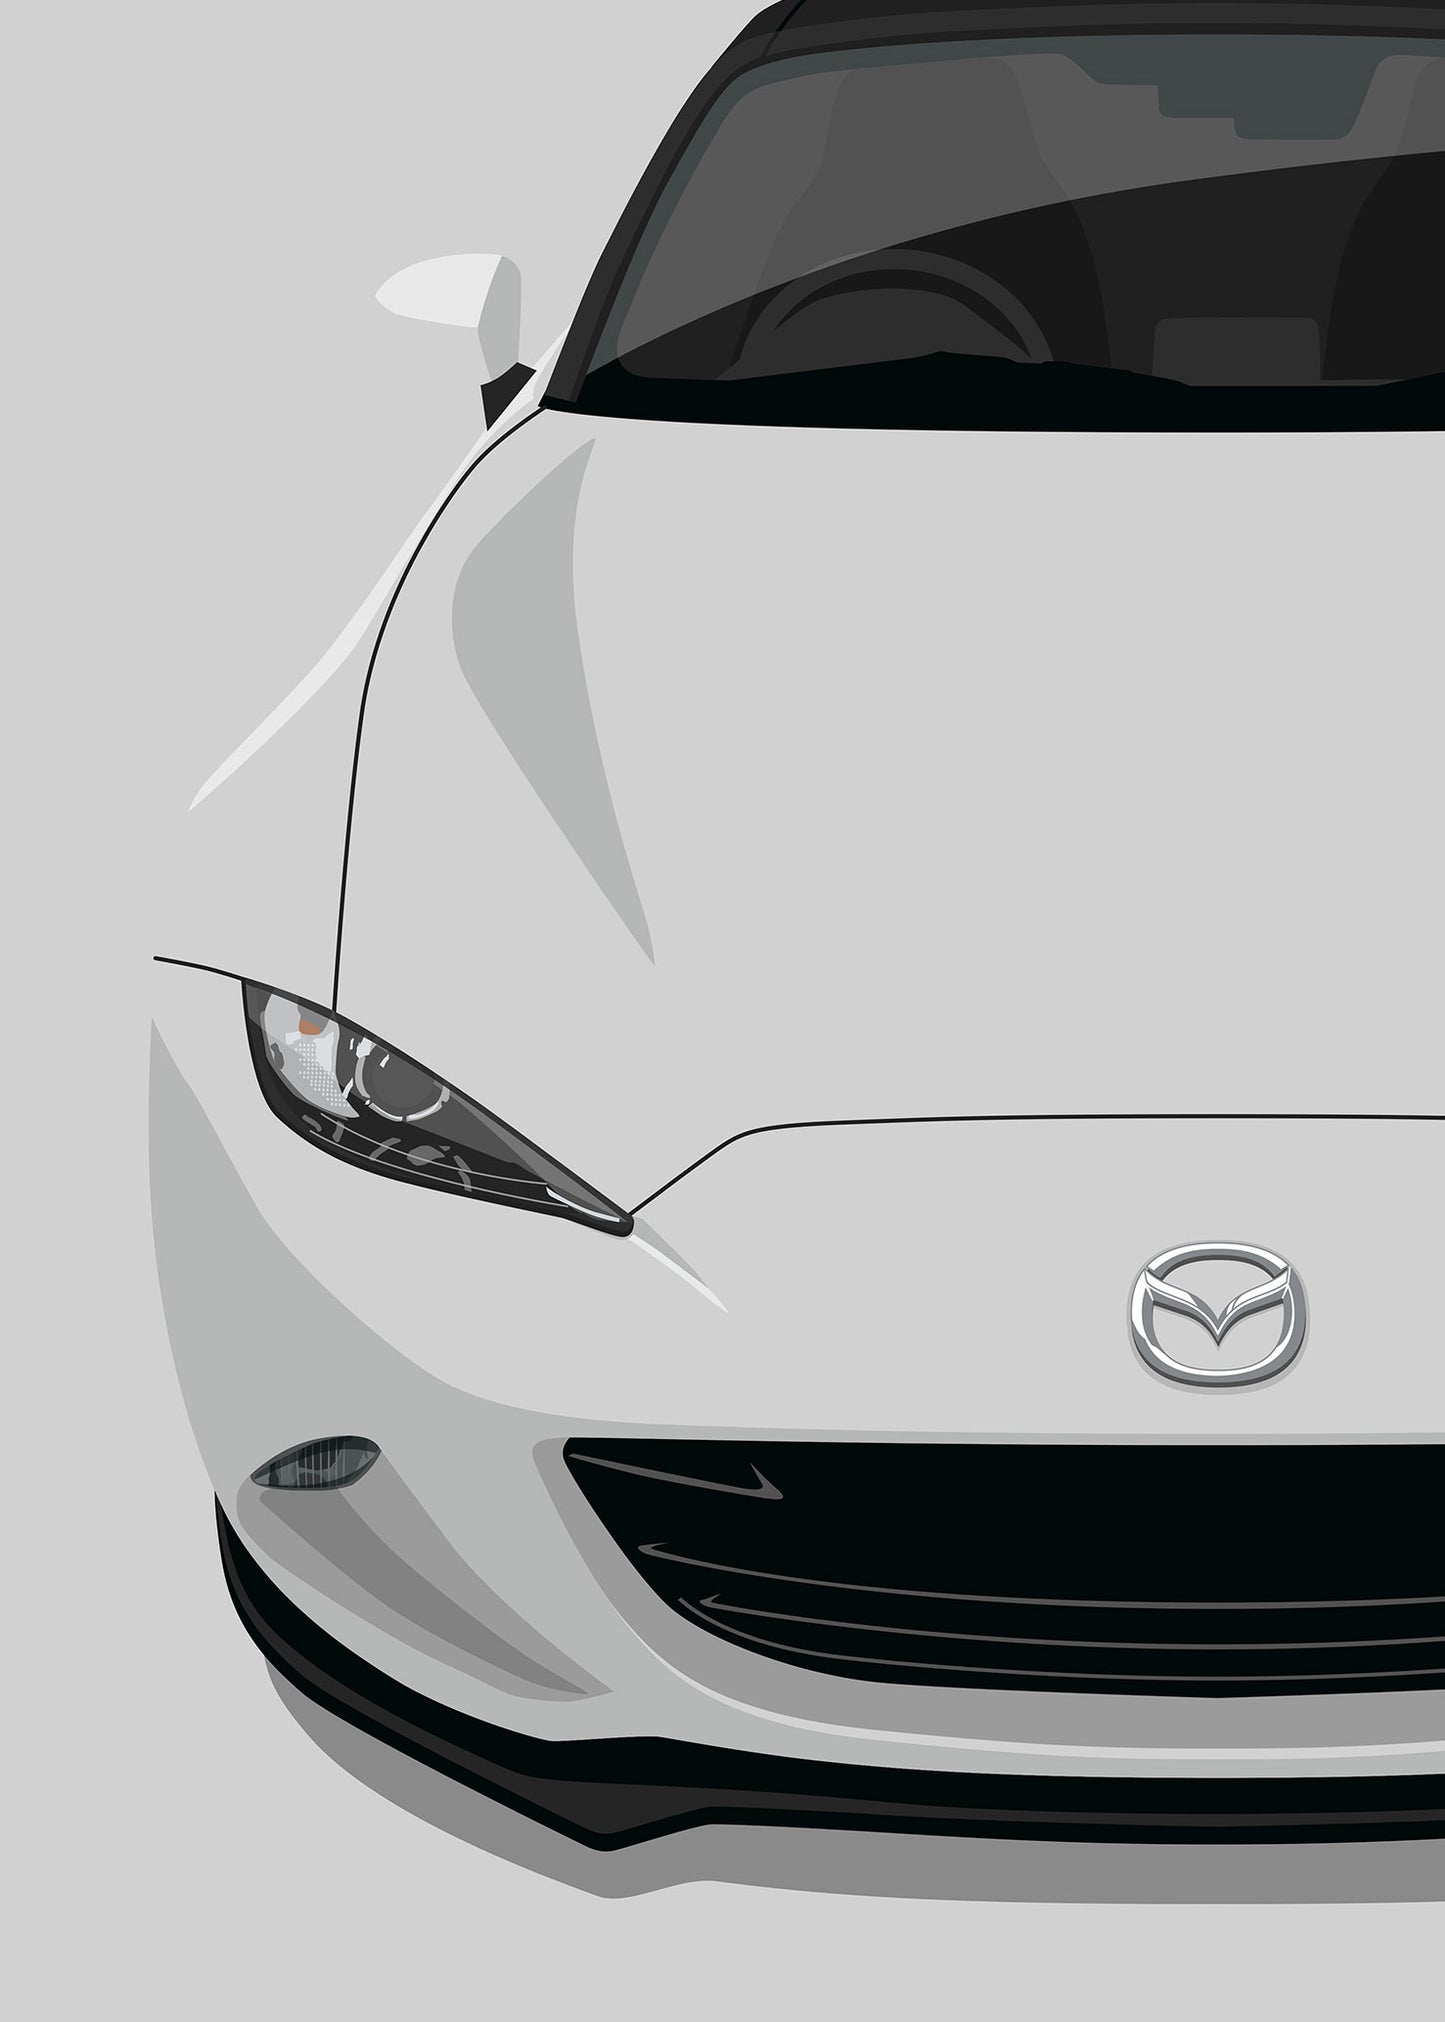 2016 Mazda MX5 RF (ND) Mk4 - Ceramic Grey - poster print